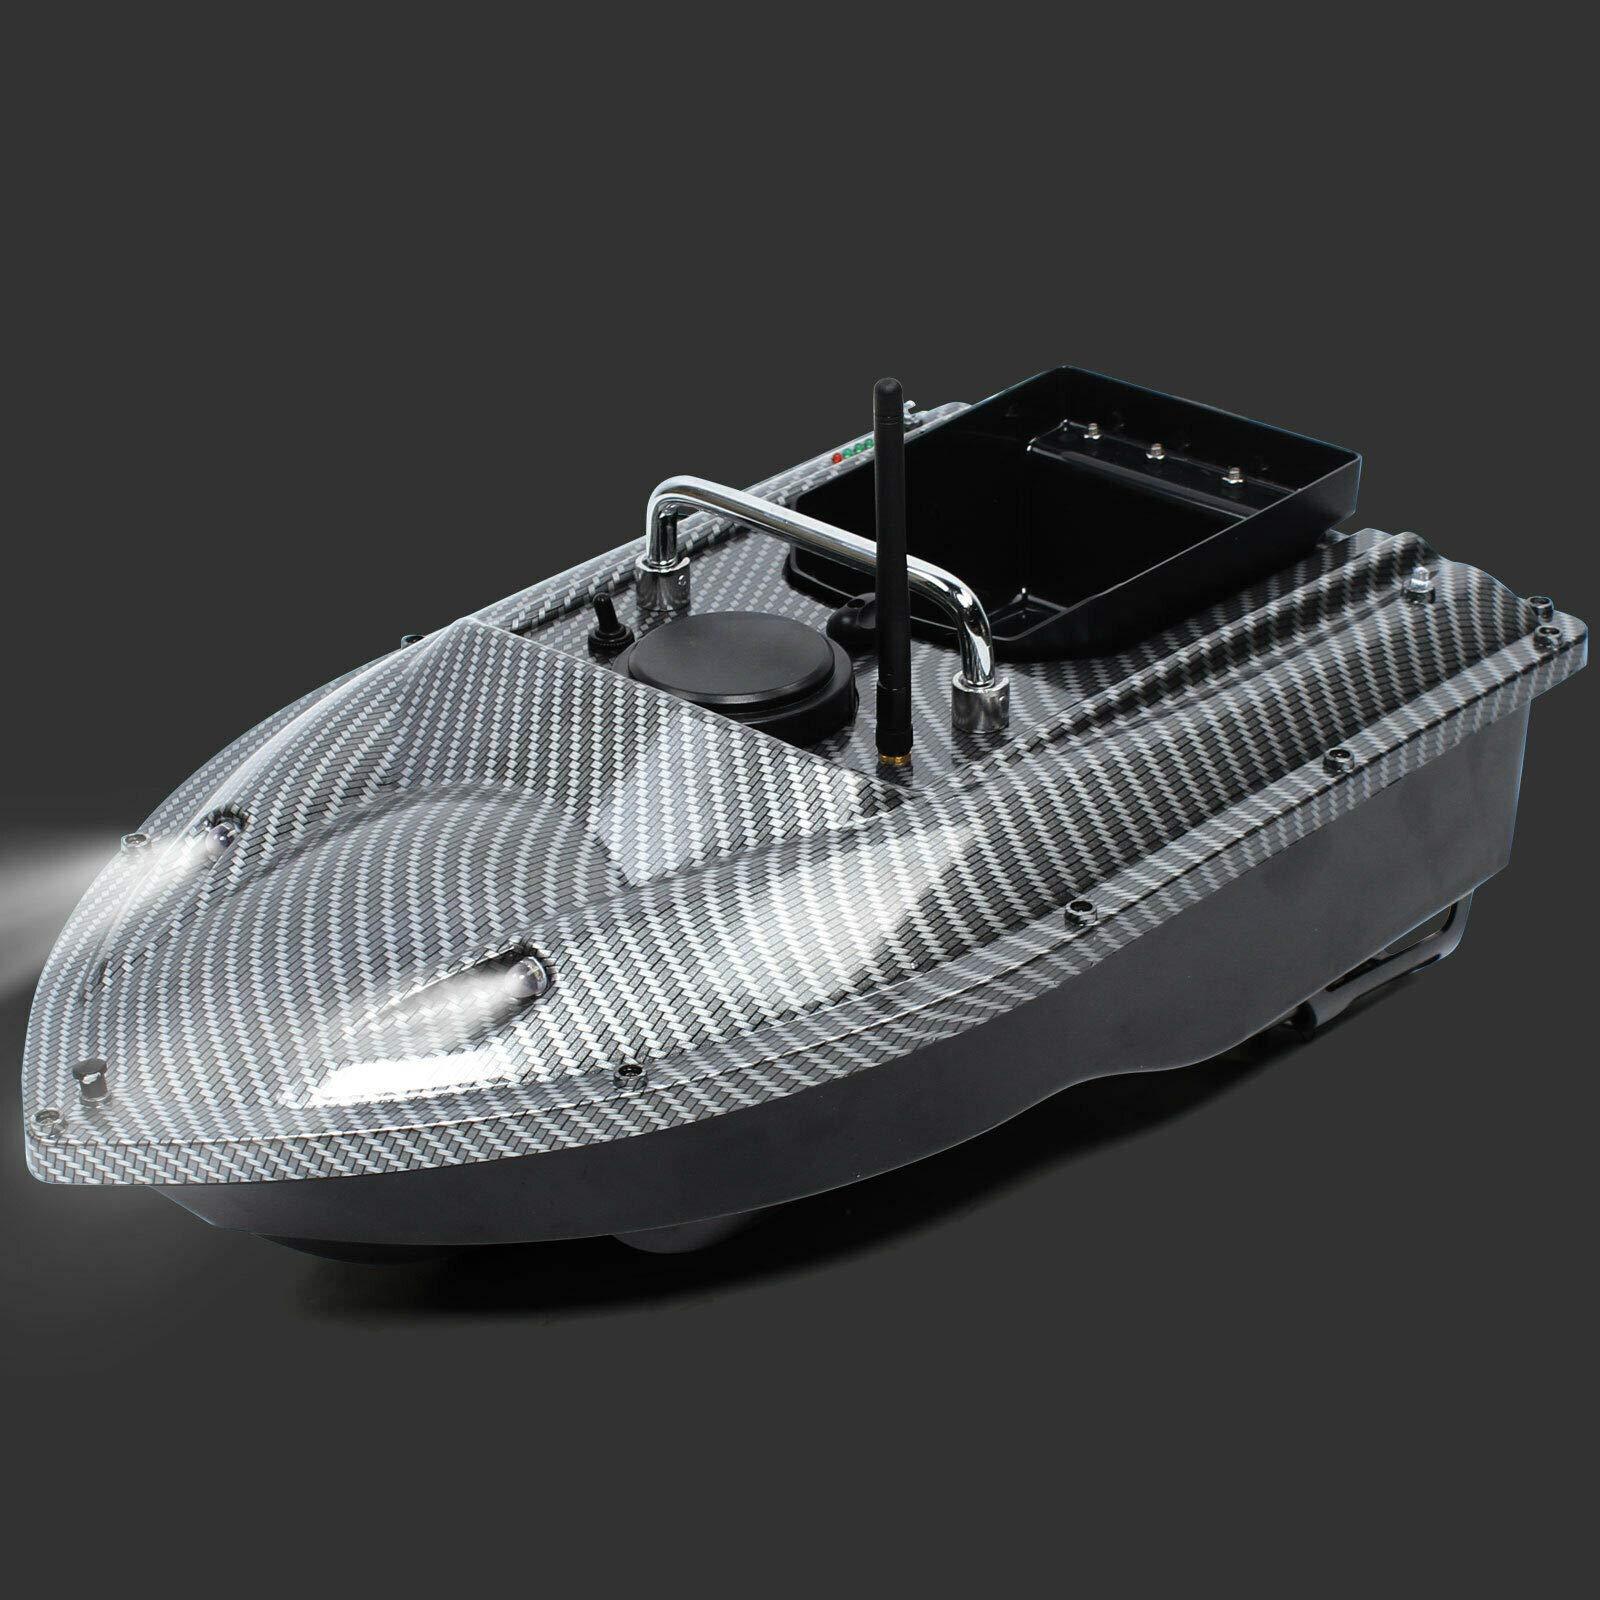 500m senza fili, barca intelligente da pesca, barca telecomandata con LED luci 